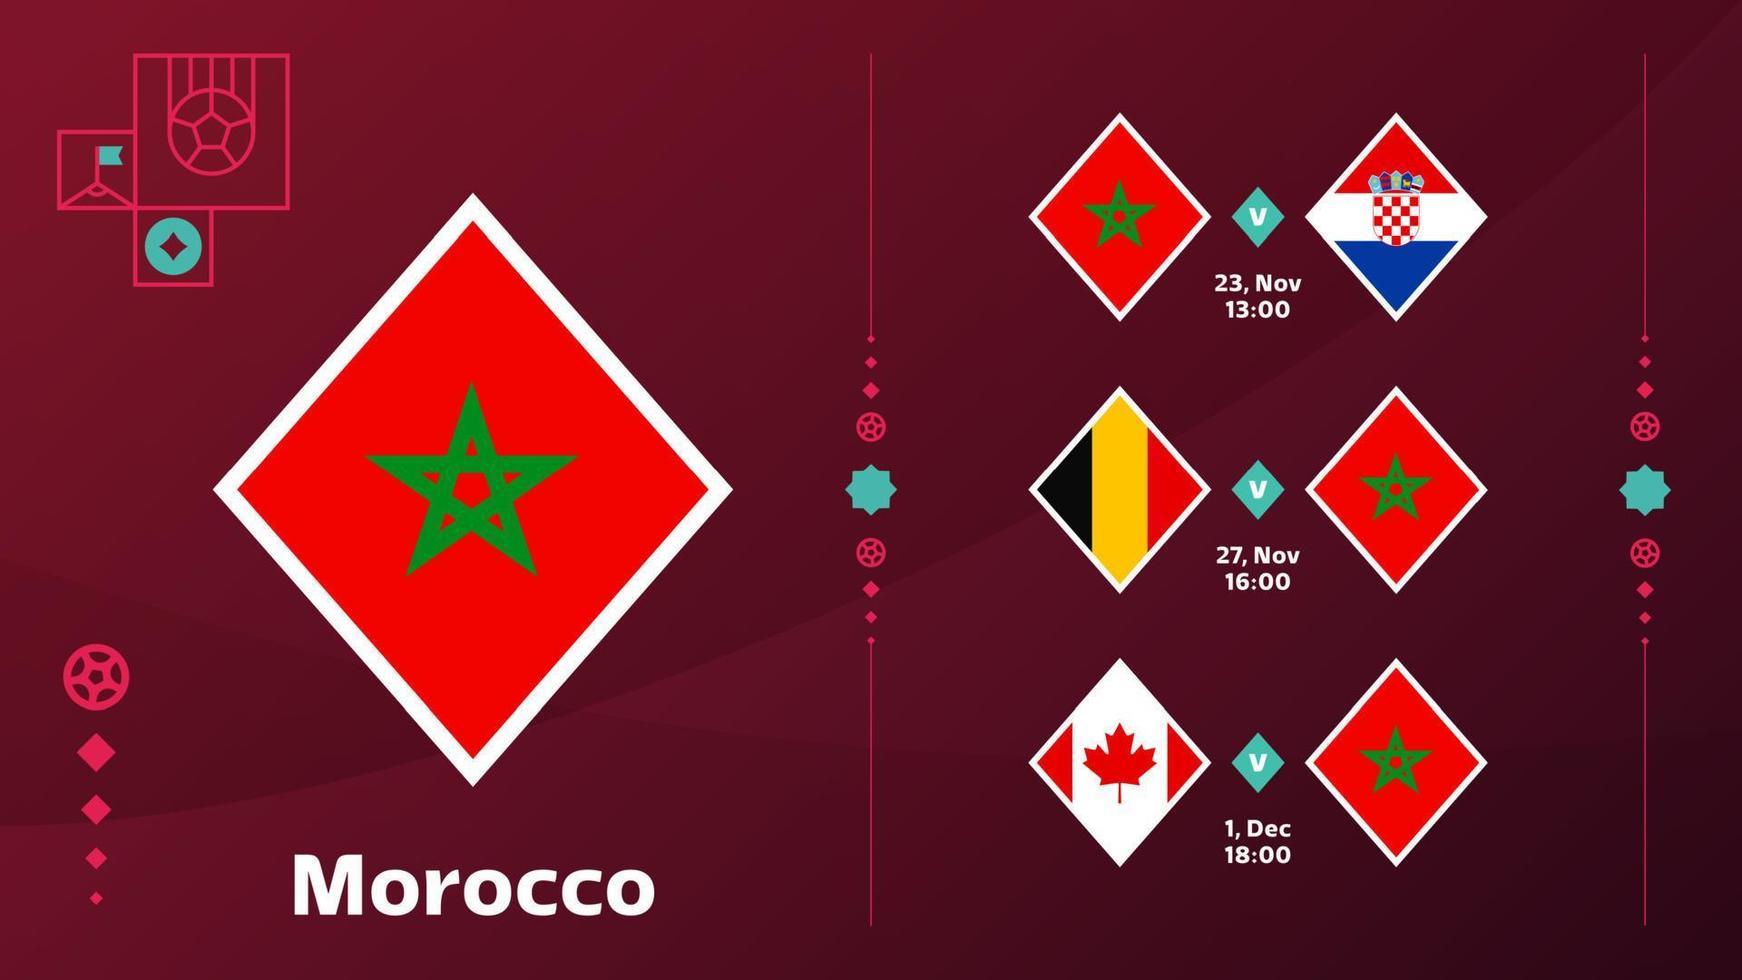 Marokko nationaal team schema wedstrijden in de laatste stadium Bij de 2022 Amerikaans voetbal wereld kampioenschap. vector illustratie van wereld Amerikaans voetbal 2022 wedstrijden.